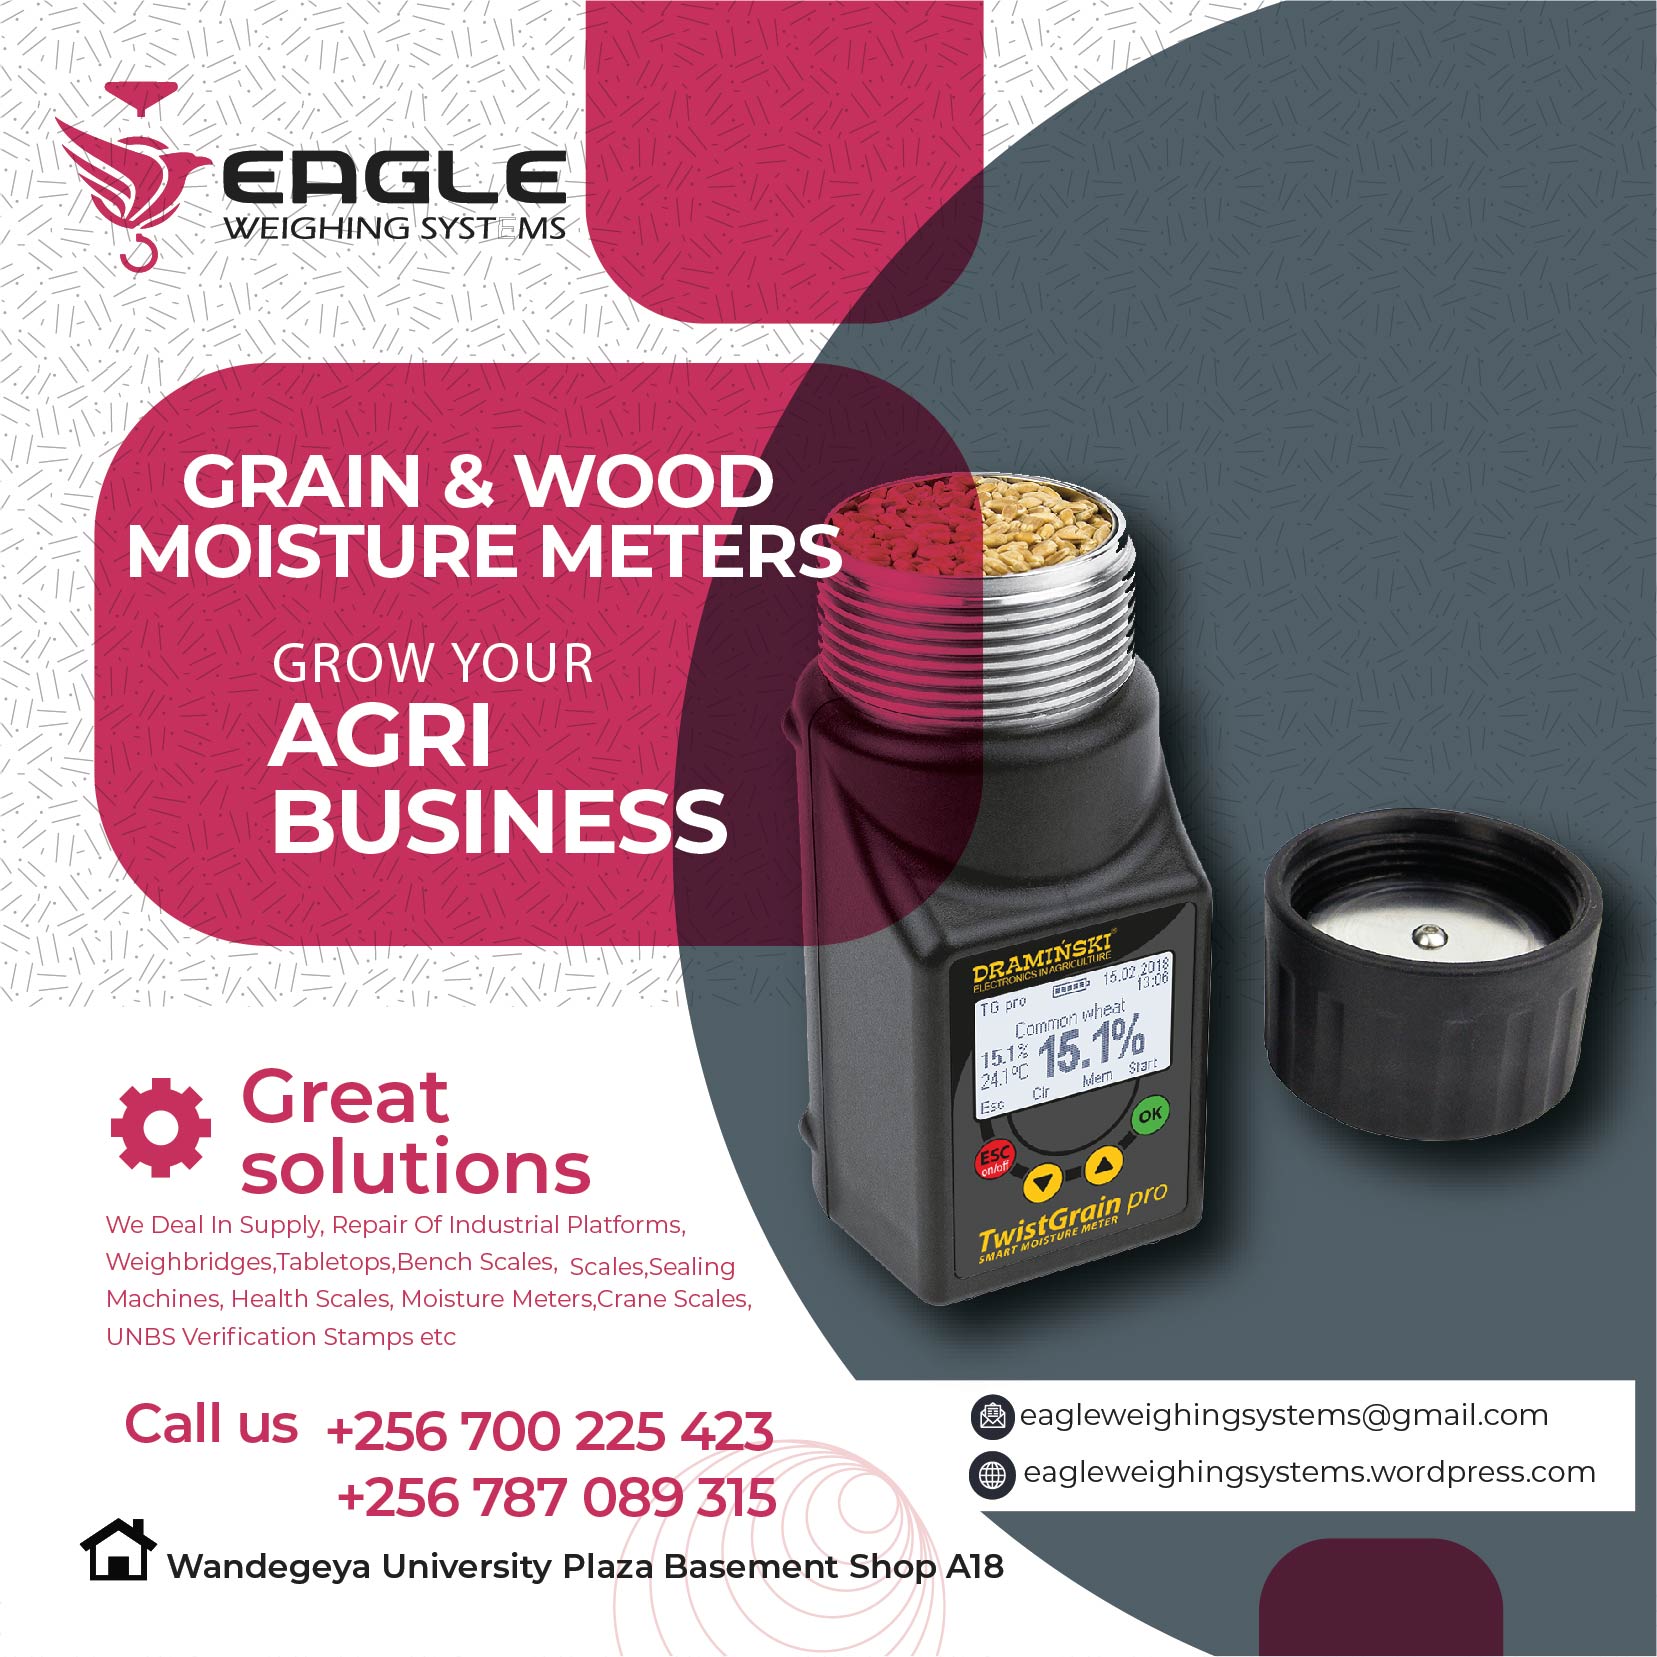 Moisture meters in Uganda